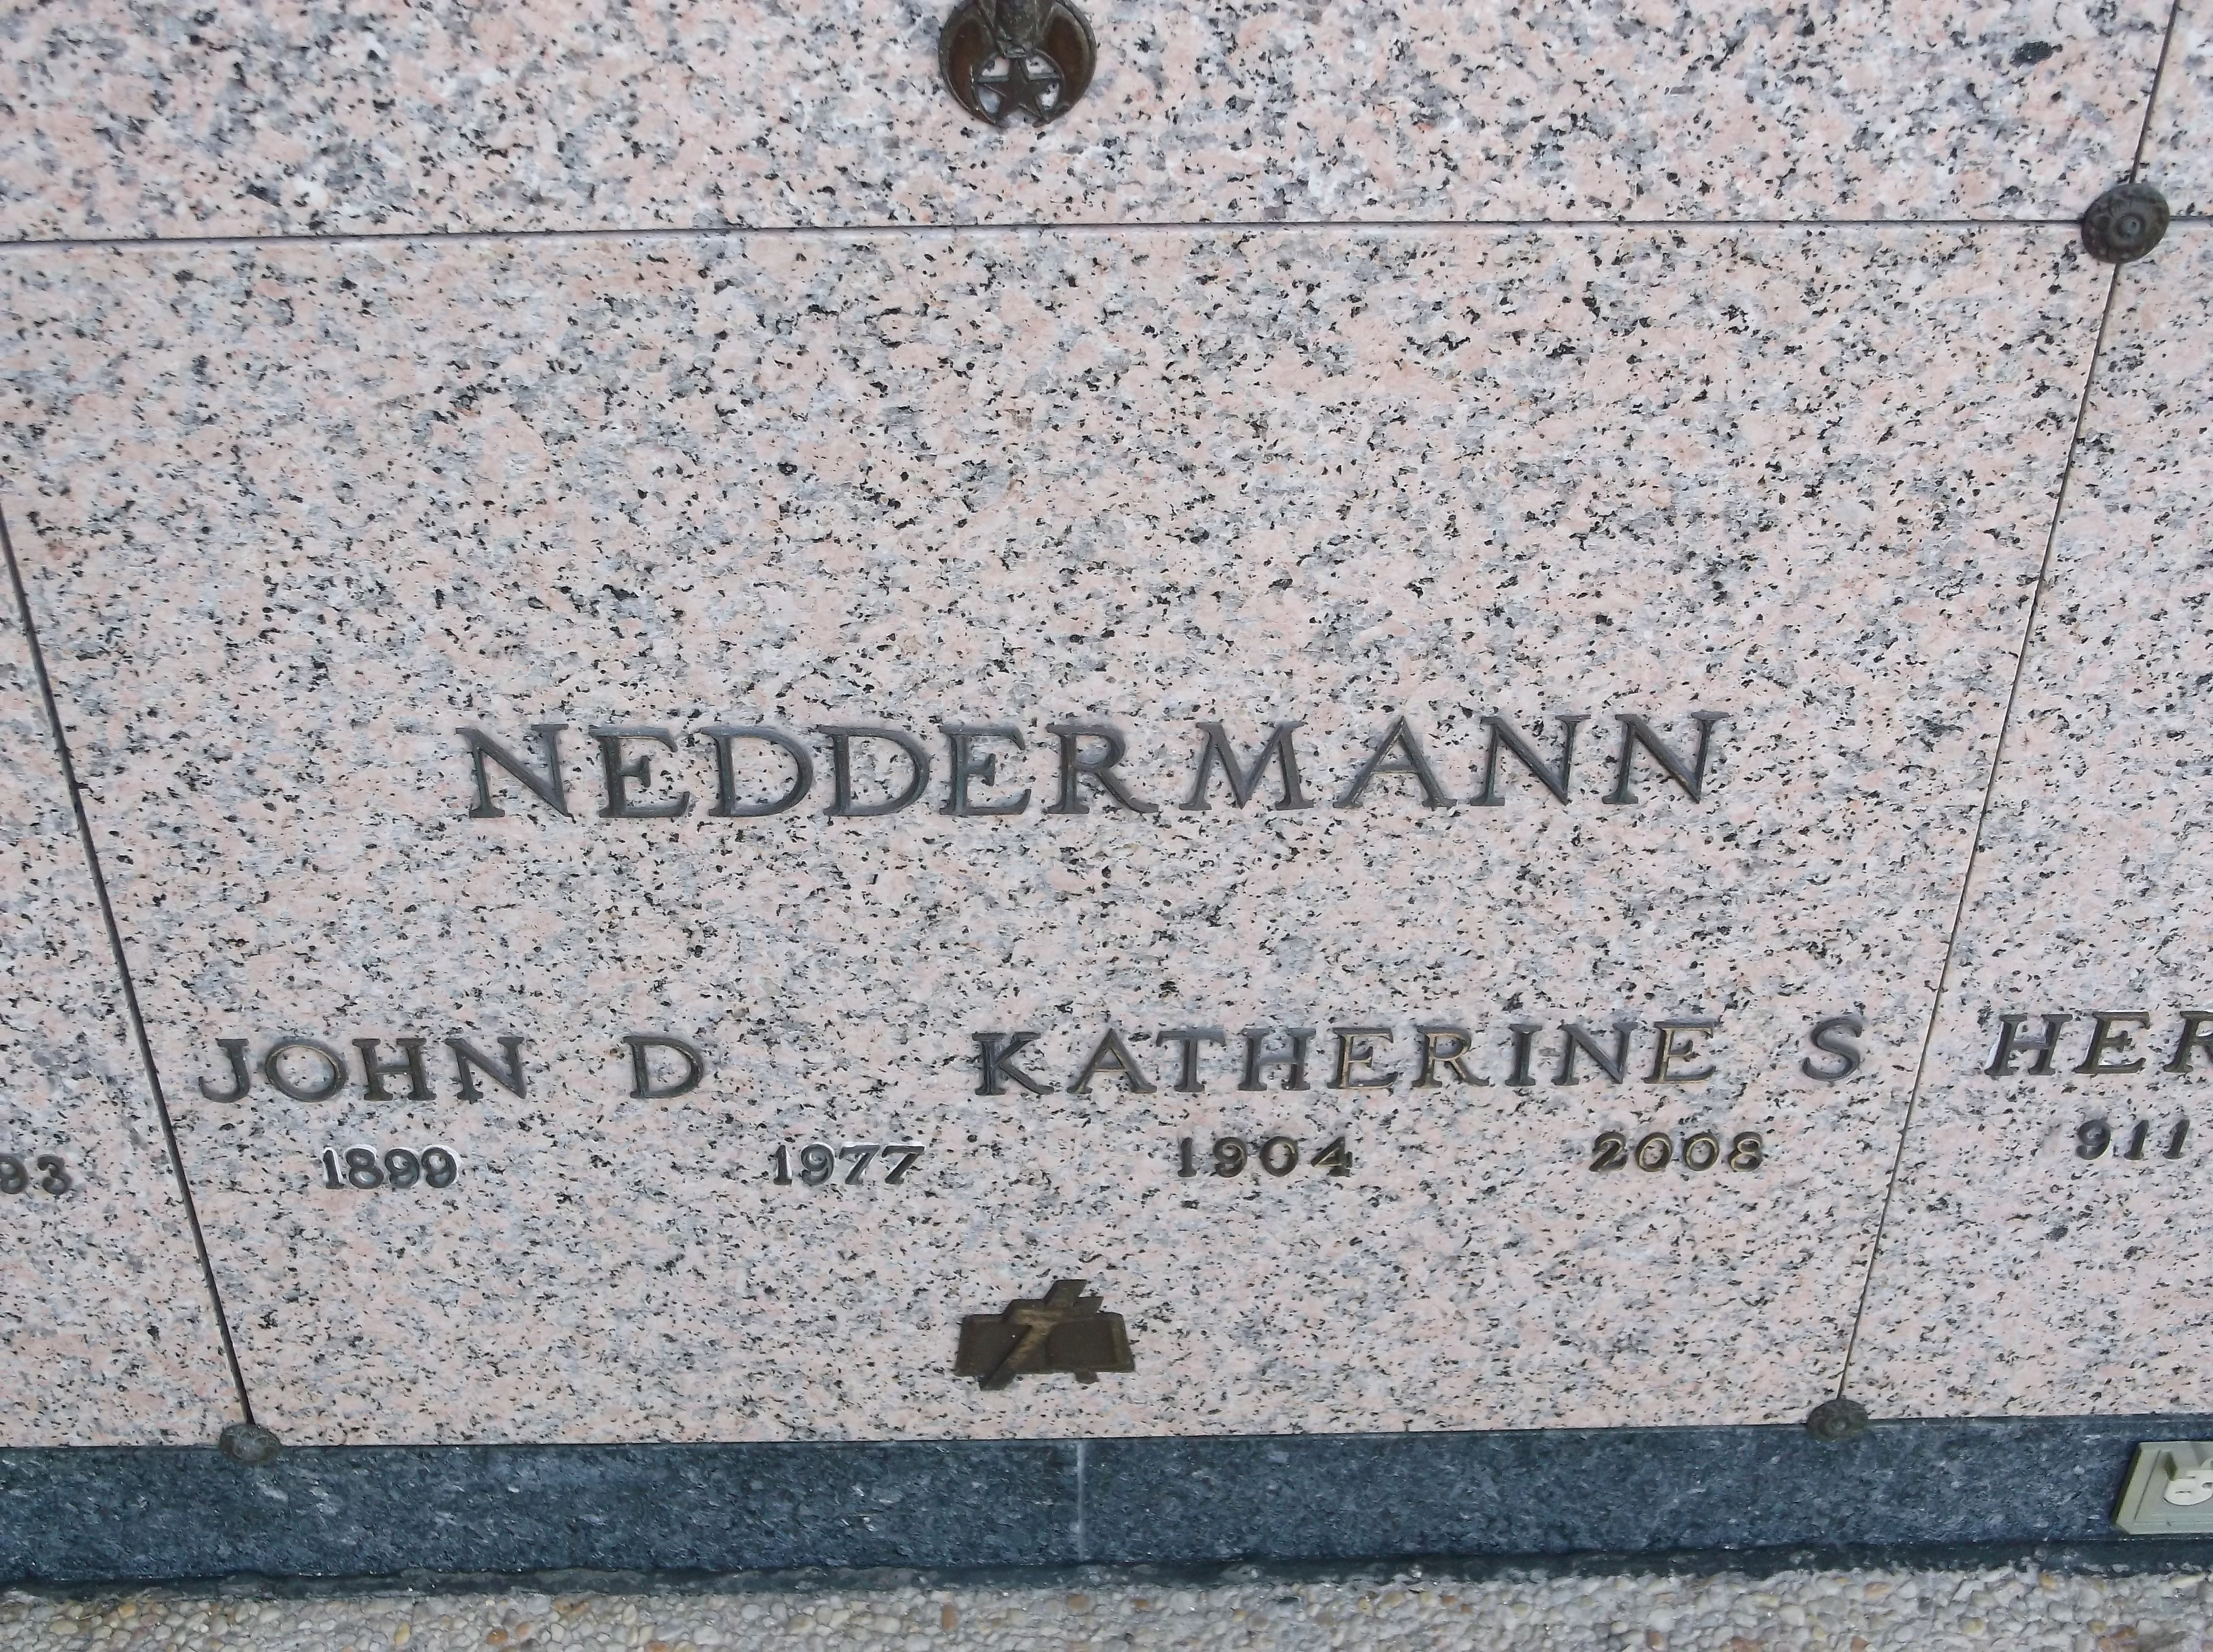 John D Neddermann